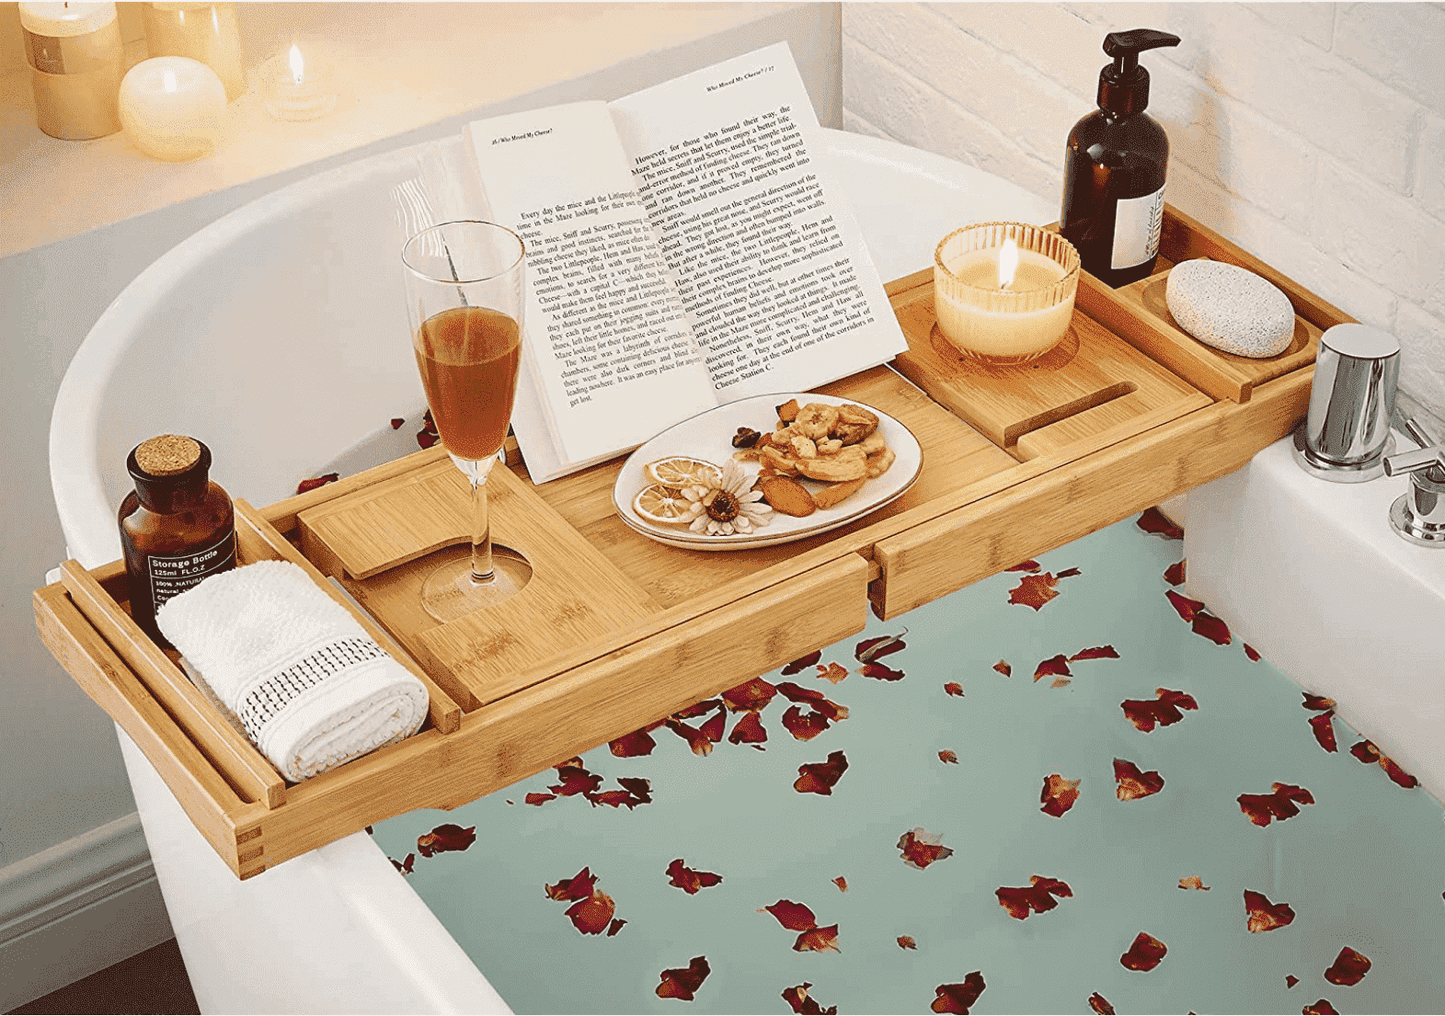 SONGMICS - Plateau de baignoire en bambou avec porte-verre, support de livre et porte-savon